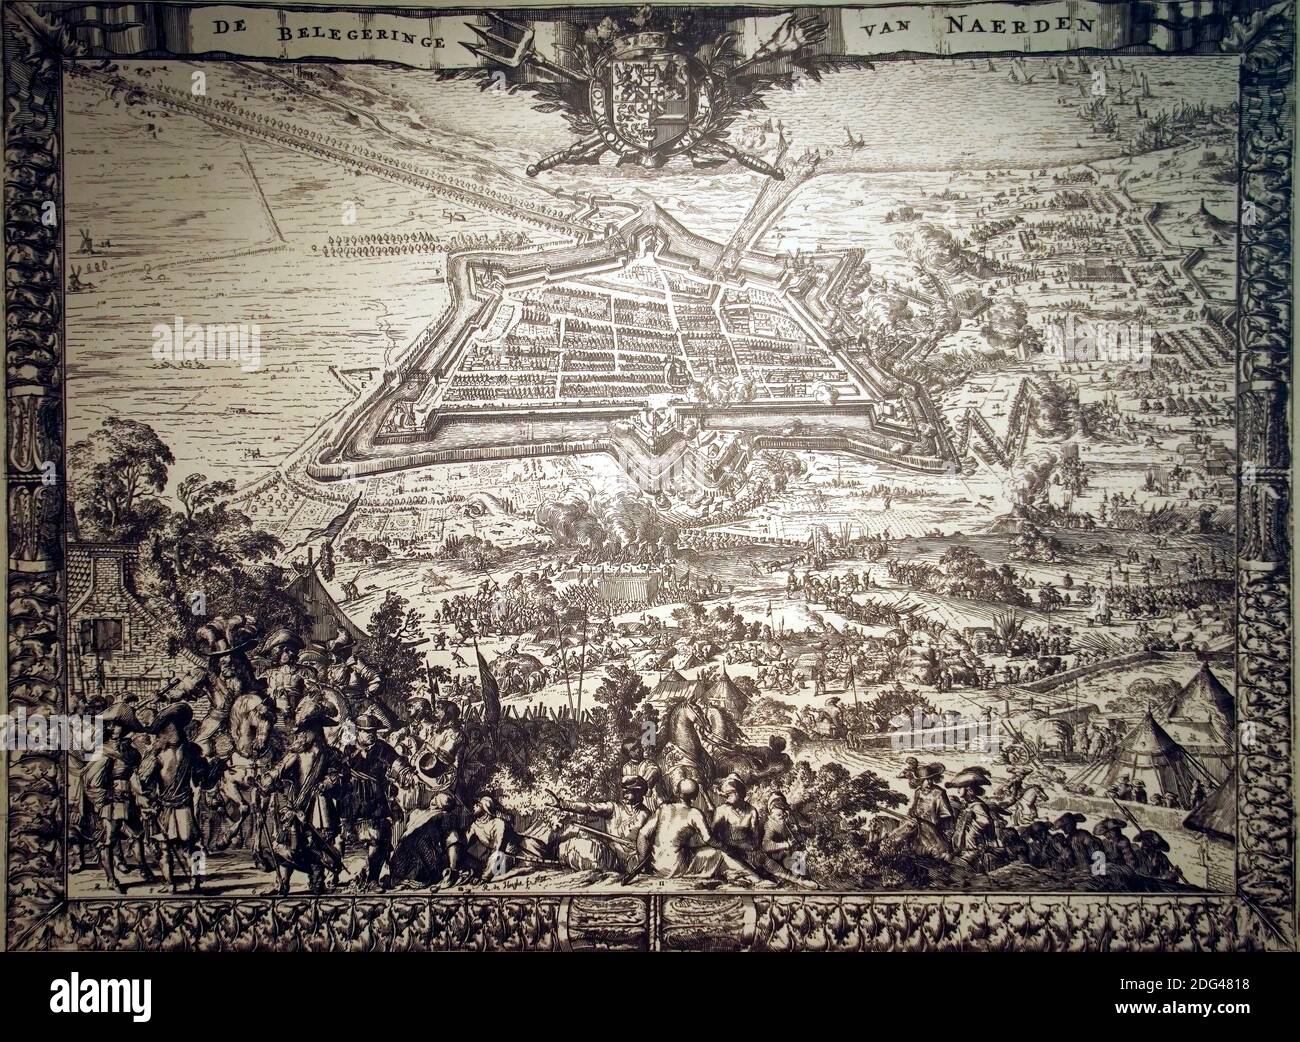 NAARDEN, PAÍSES BAJOS - Dic 13, 2018 - Mapa vintage de la ciudad fortificada de Naarden, países Bajos Foto de stock